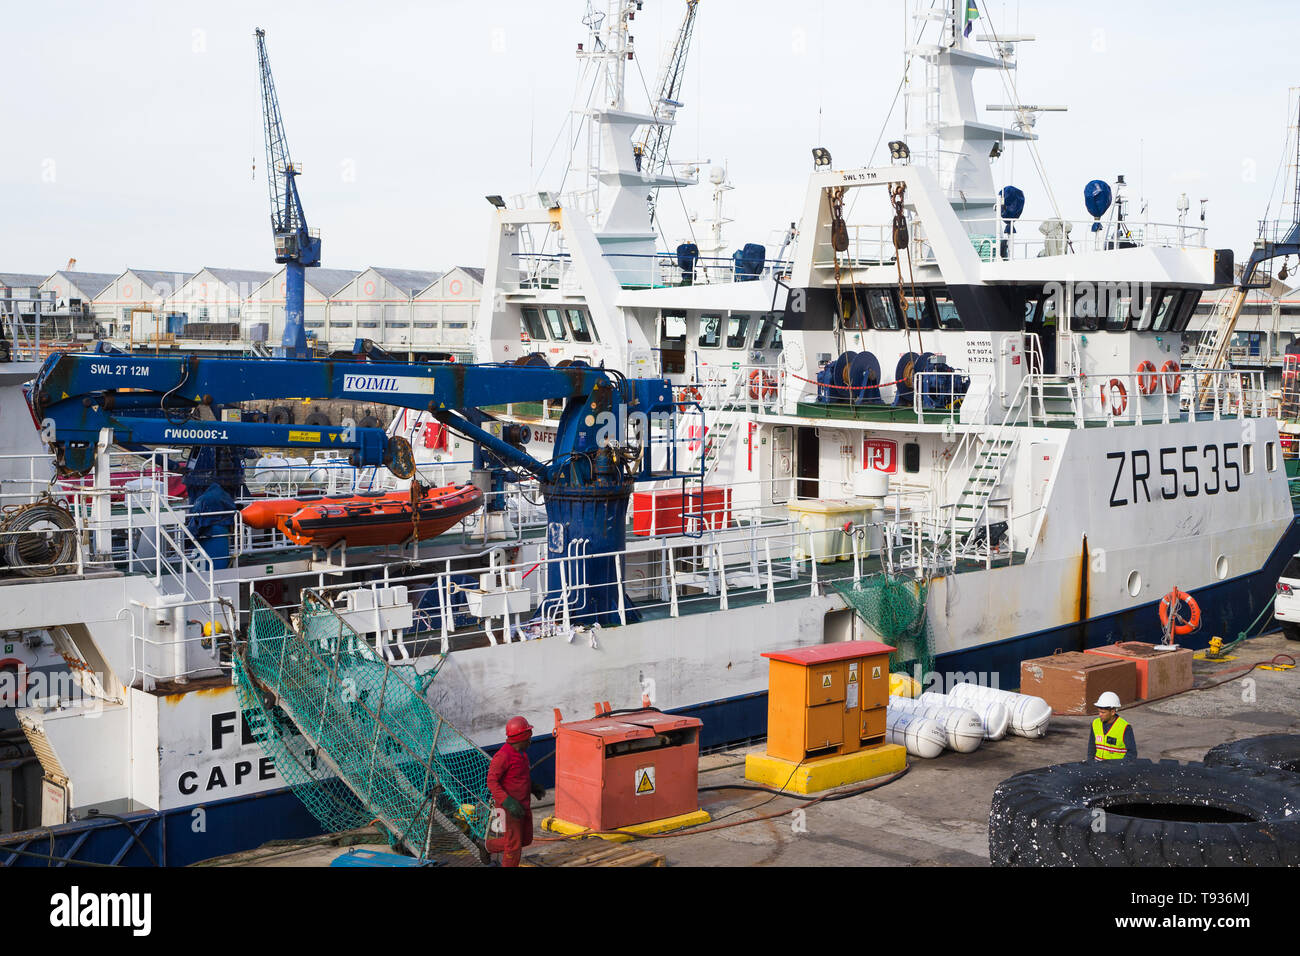 Industrielle und kommerzielle Fischtrawler oder Schiff am Dock in Kapstadt Hafen oder Hafen, Südafrika Stockfoto